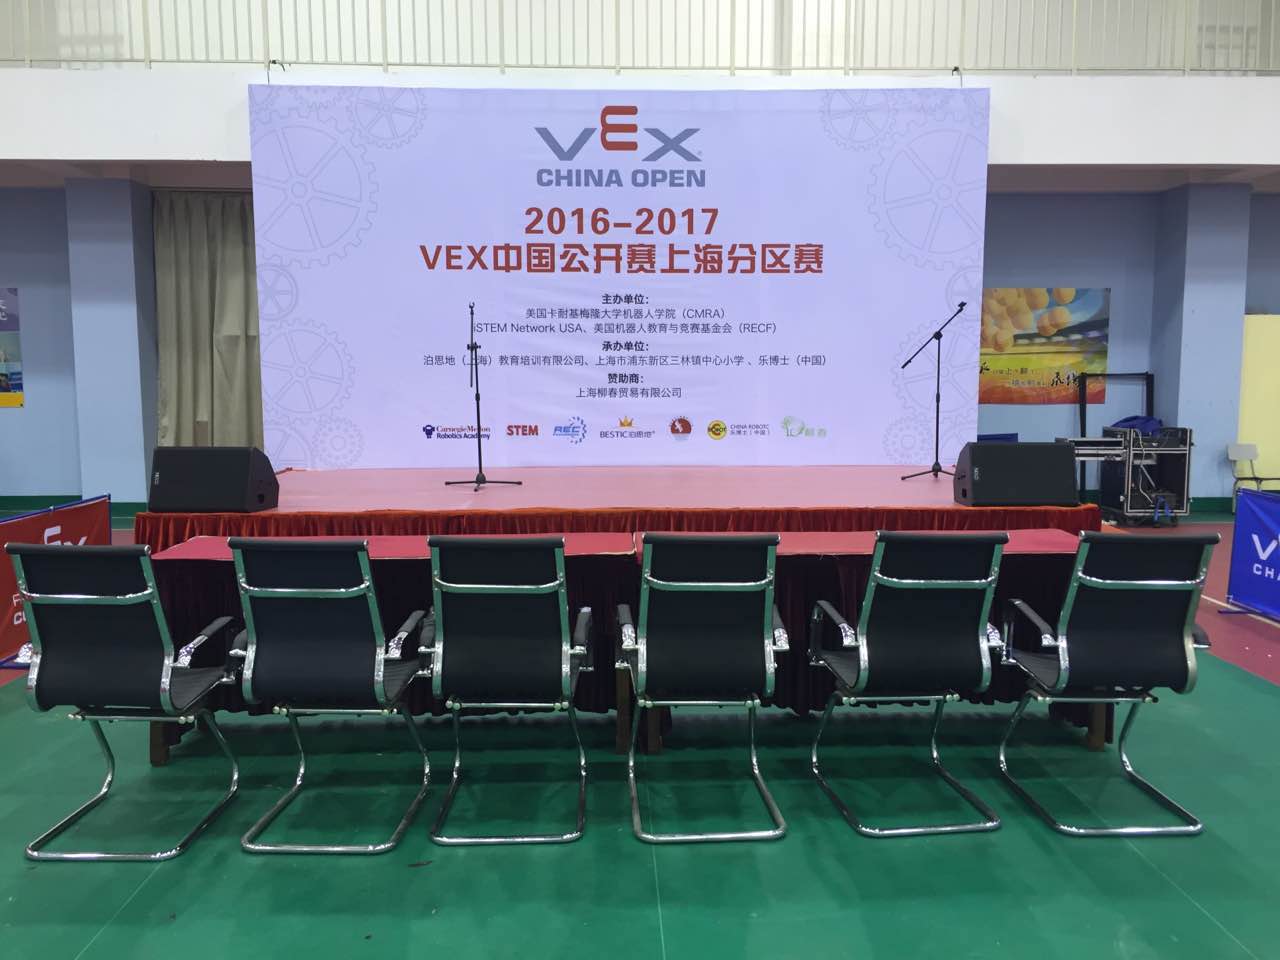 VEX機器人世界排名賽中國公開賽